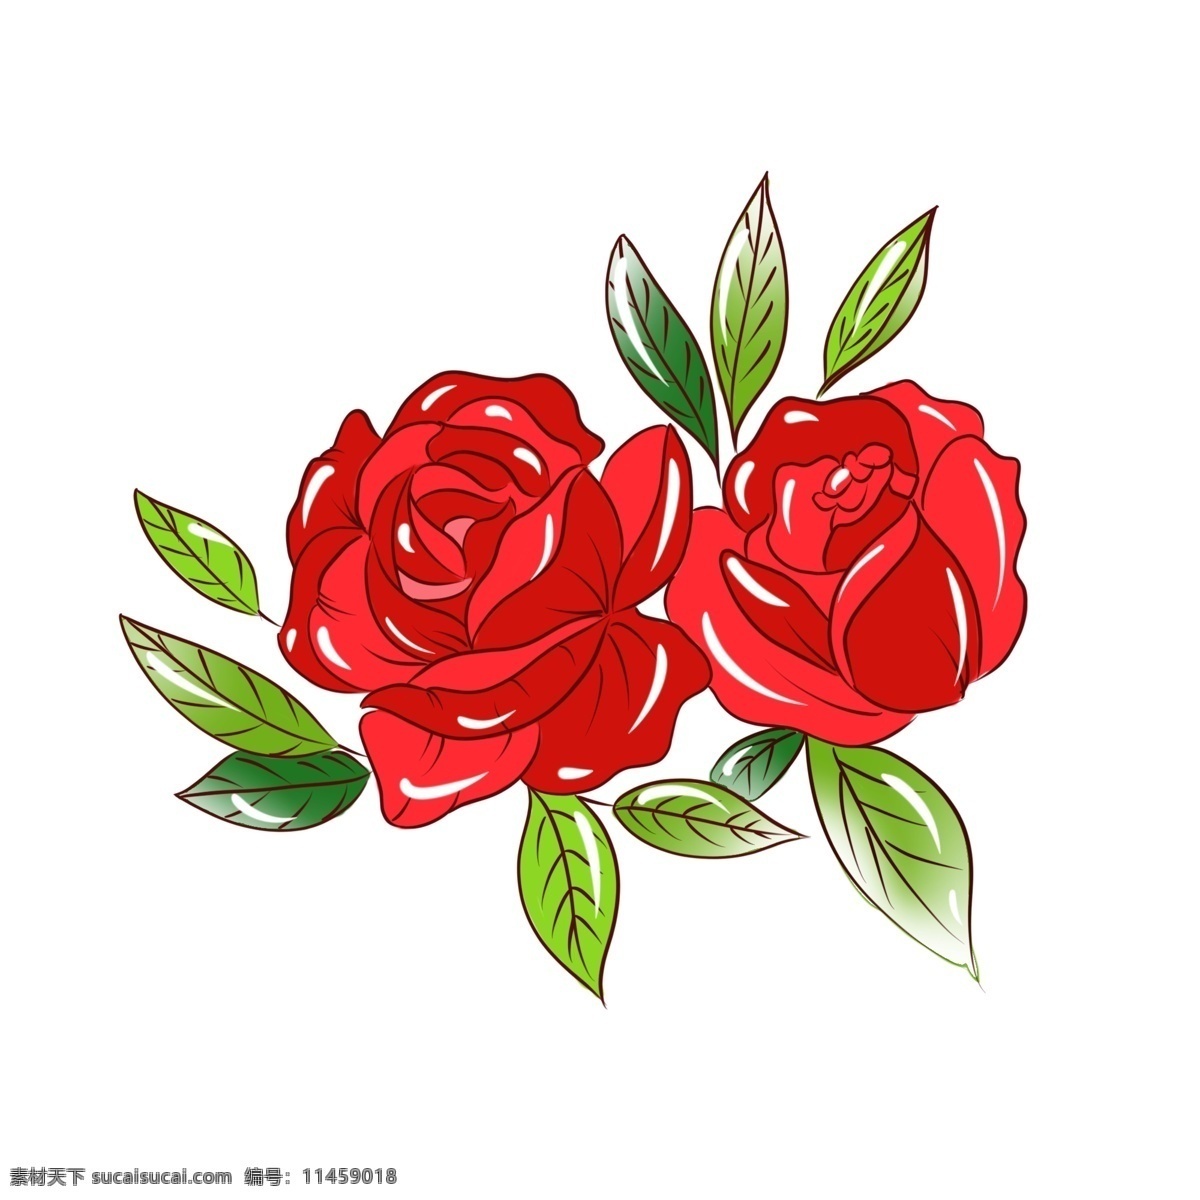 手绘 植物 花卉 红色 玫瑰花 商用 手绘植物 手绘花卉 植物花卉 花草树木 手绘花草 手绘花束